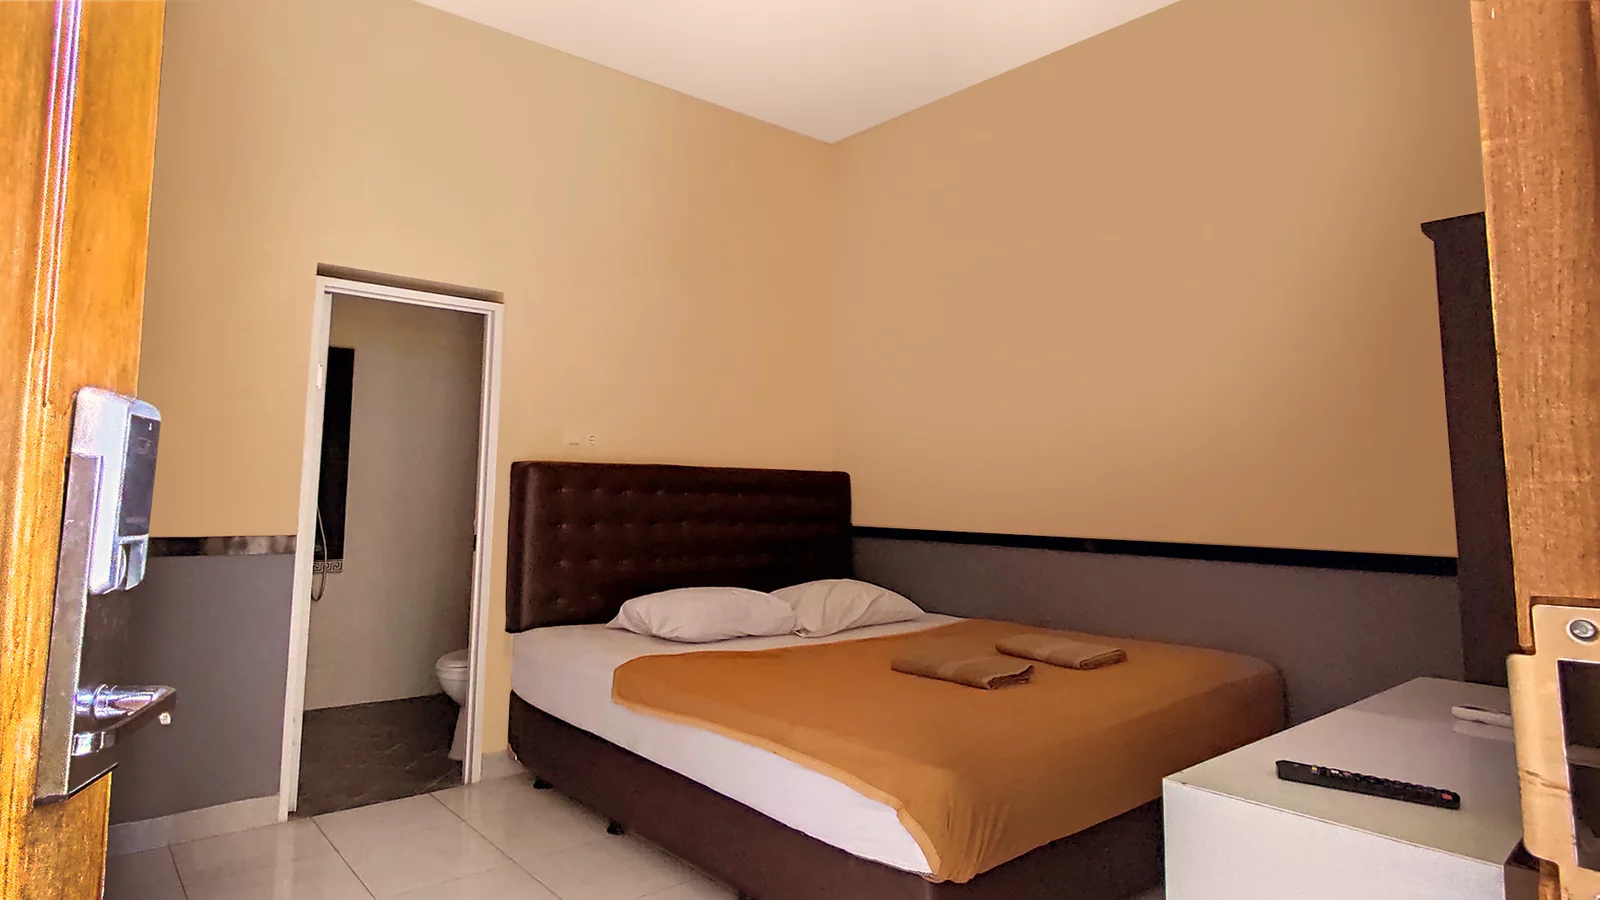 Pilihan Terdekat dari  Hotel Neo Semarang